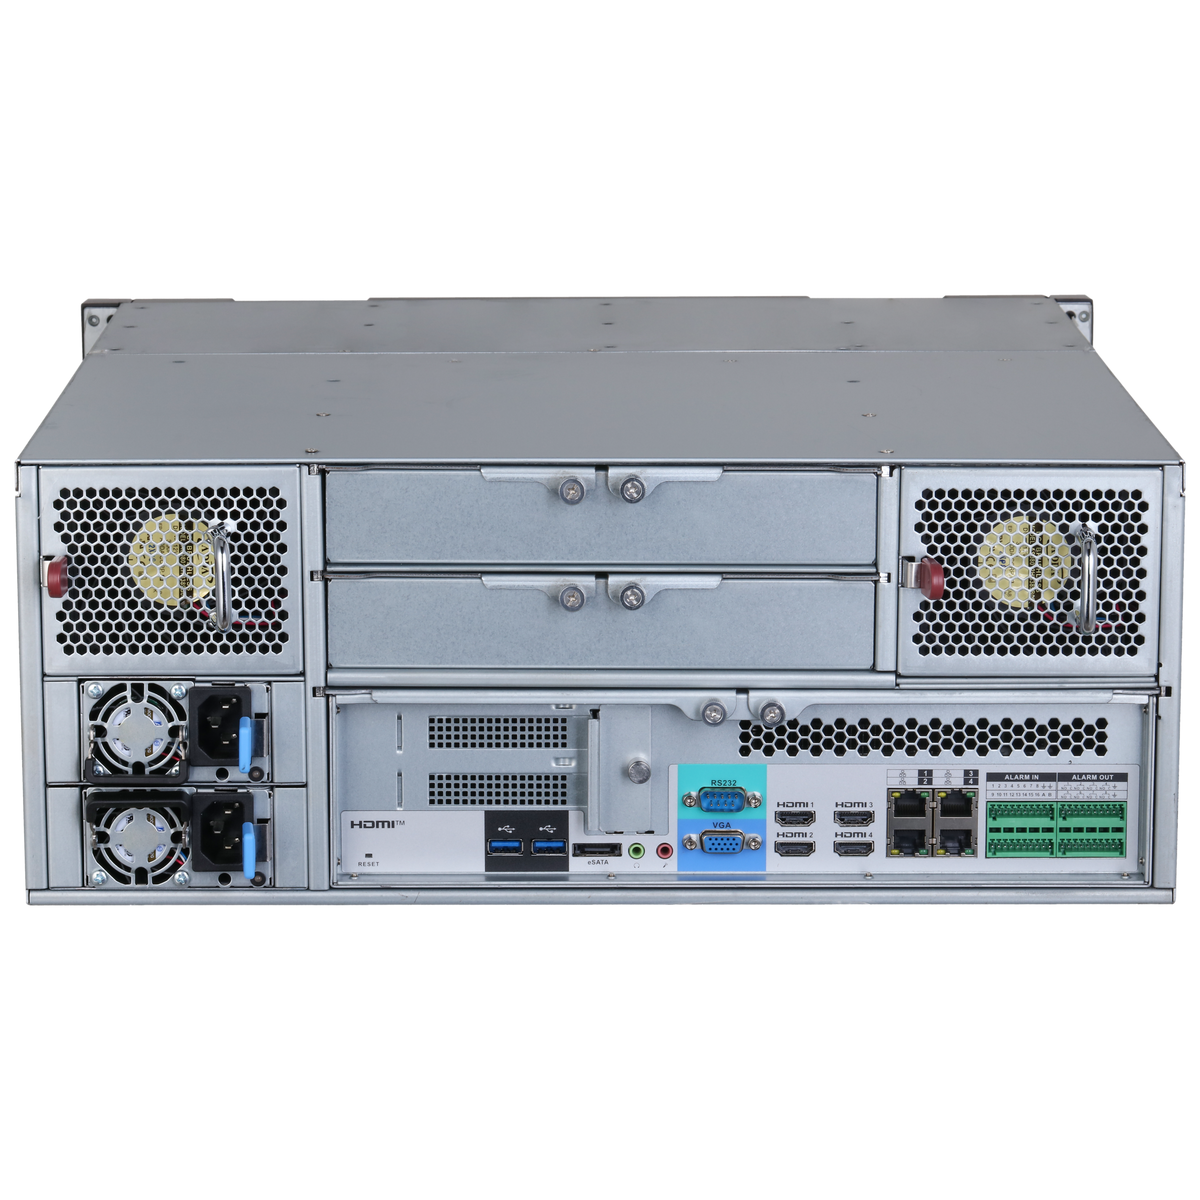 DAHUA IVSS7124DR 256CH 4U Intelligent Video Surveillance Server